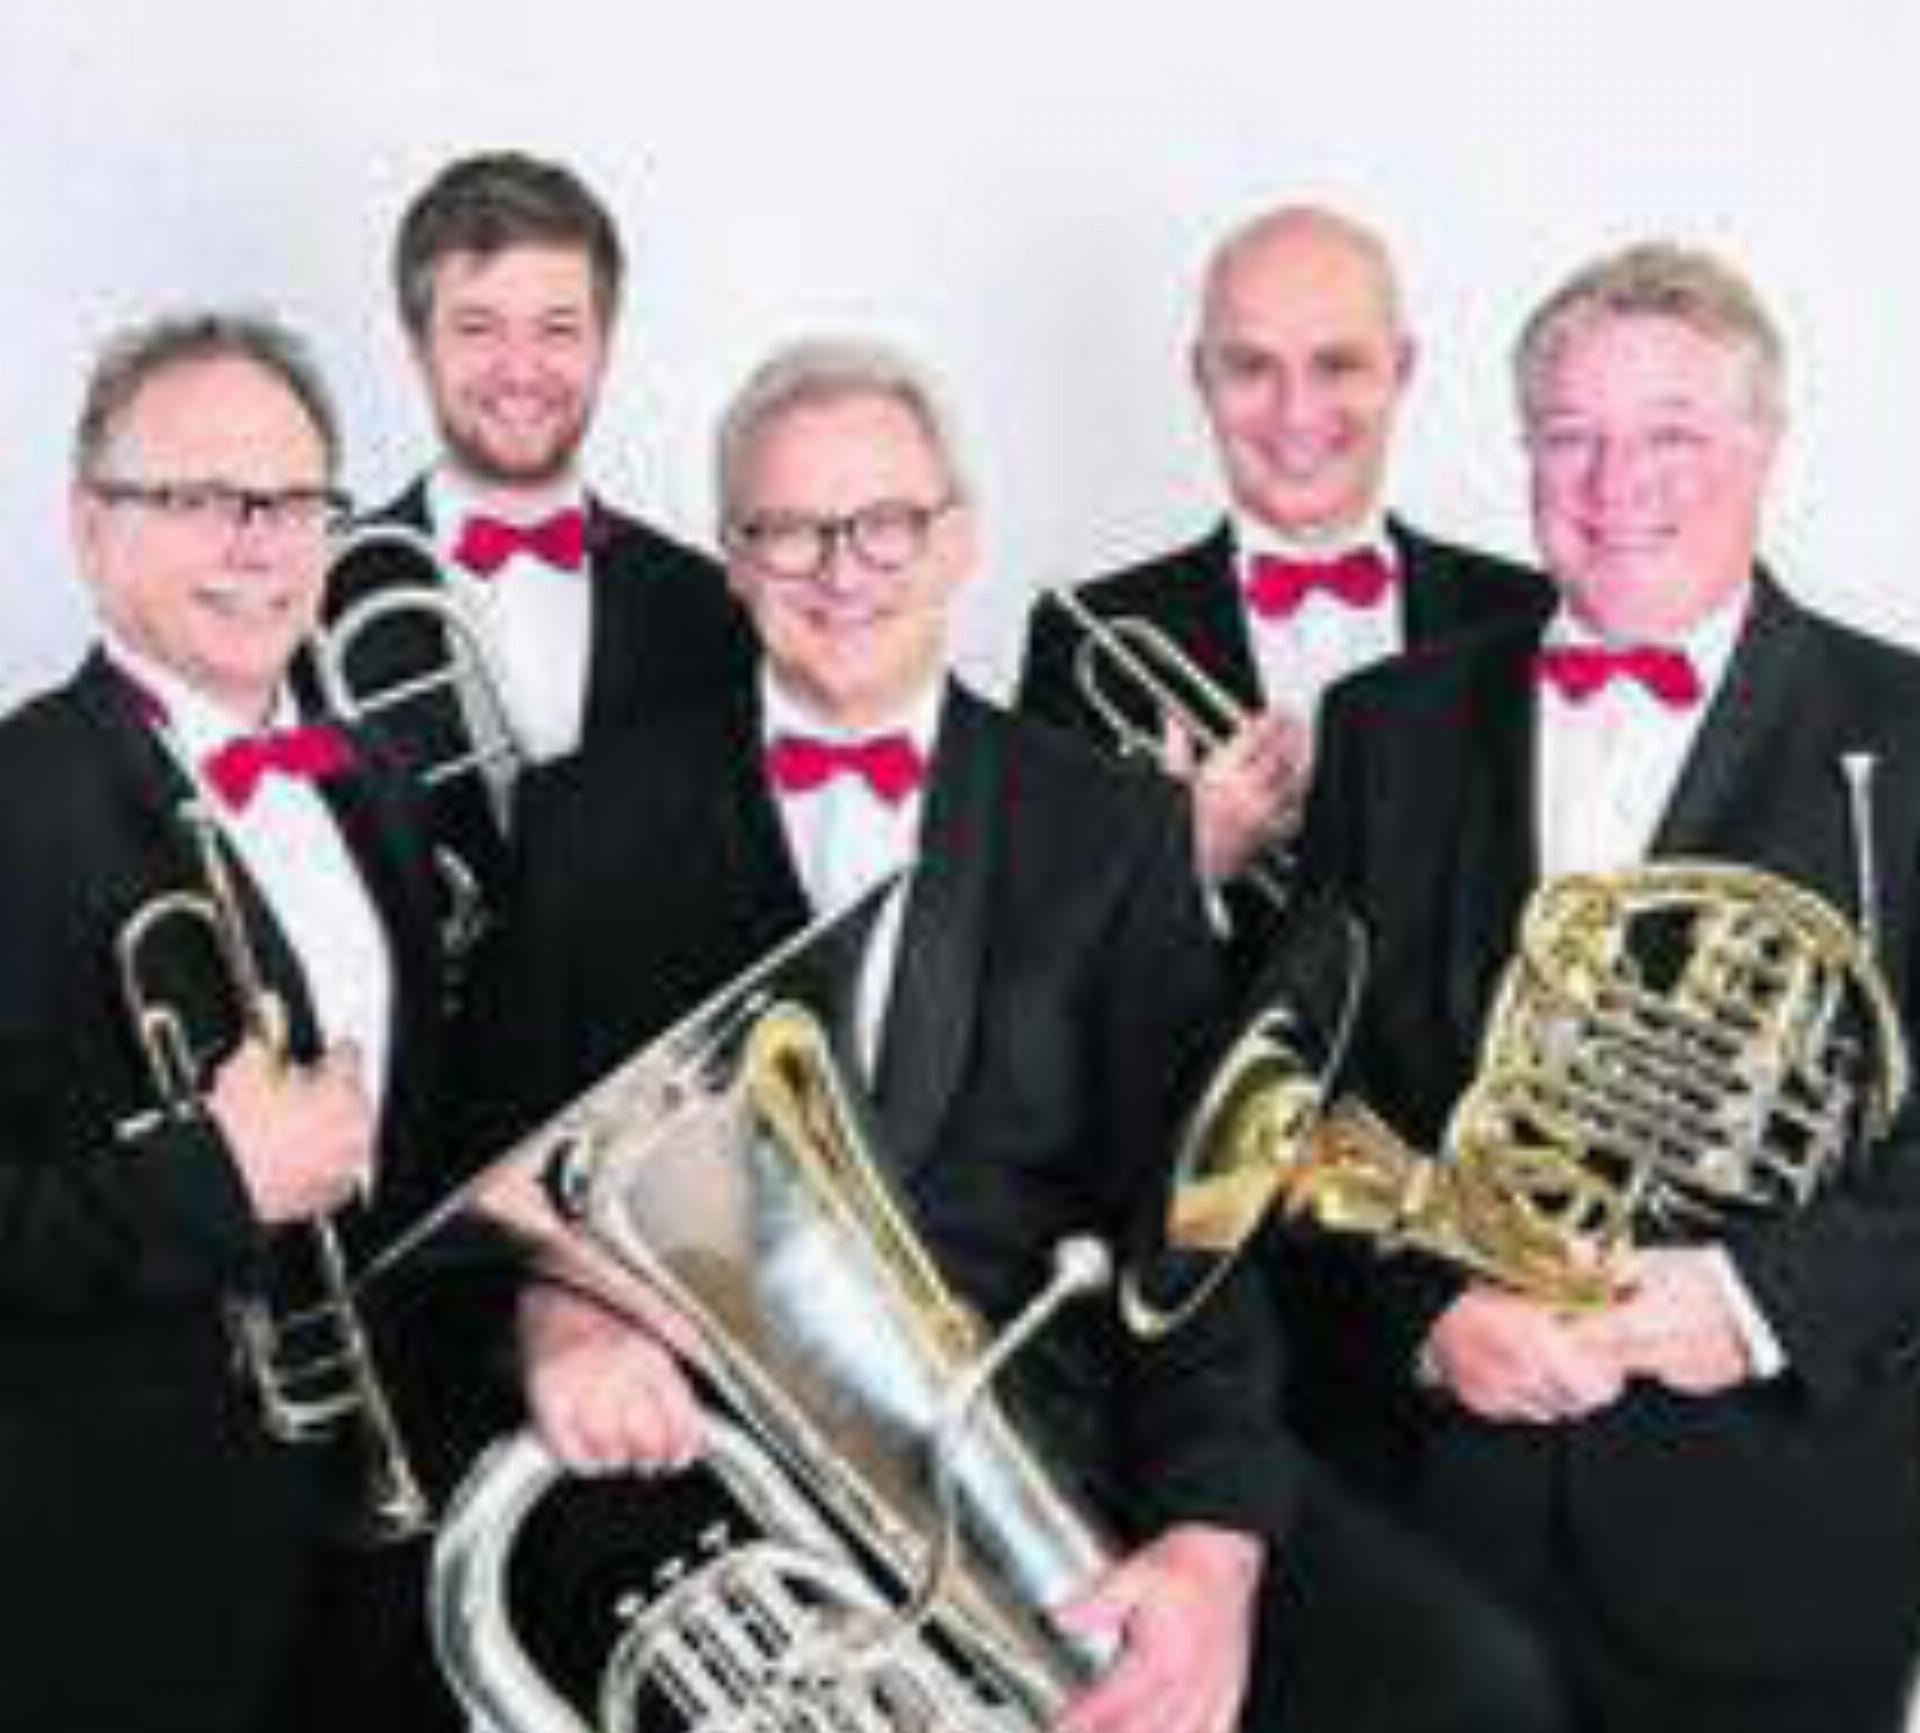 Das Brass Quintett Quintessenz probt und konzertiert zusammen in dieser Besetzung seit 2006. Bild: zg